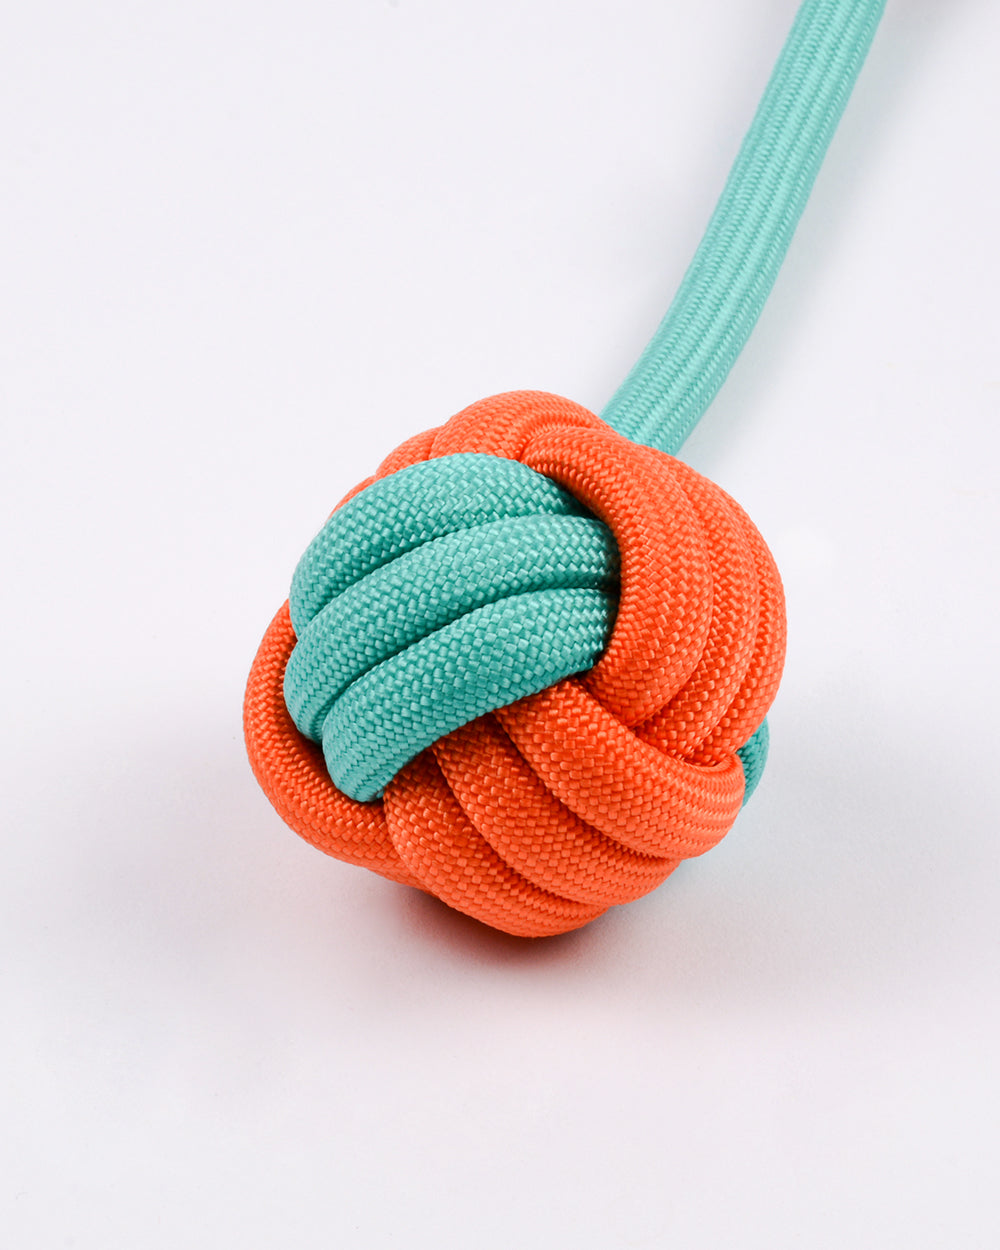 尼龍繩和球拖輪玩具帶環 - 橙綠